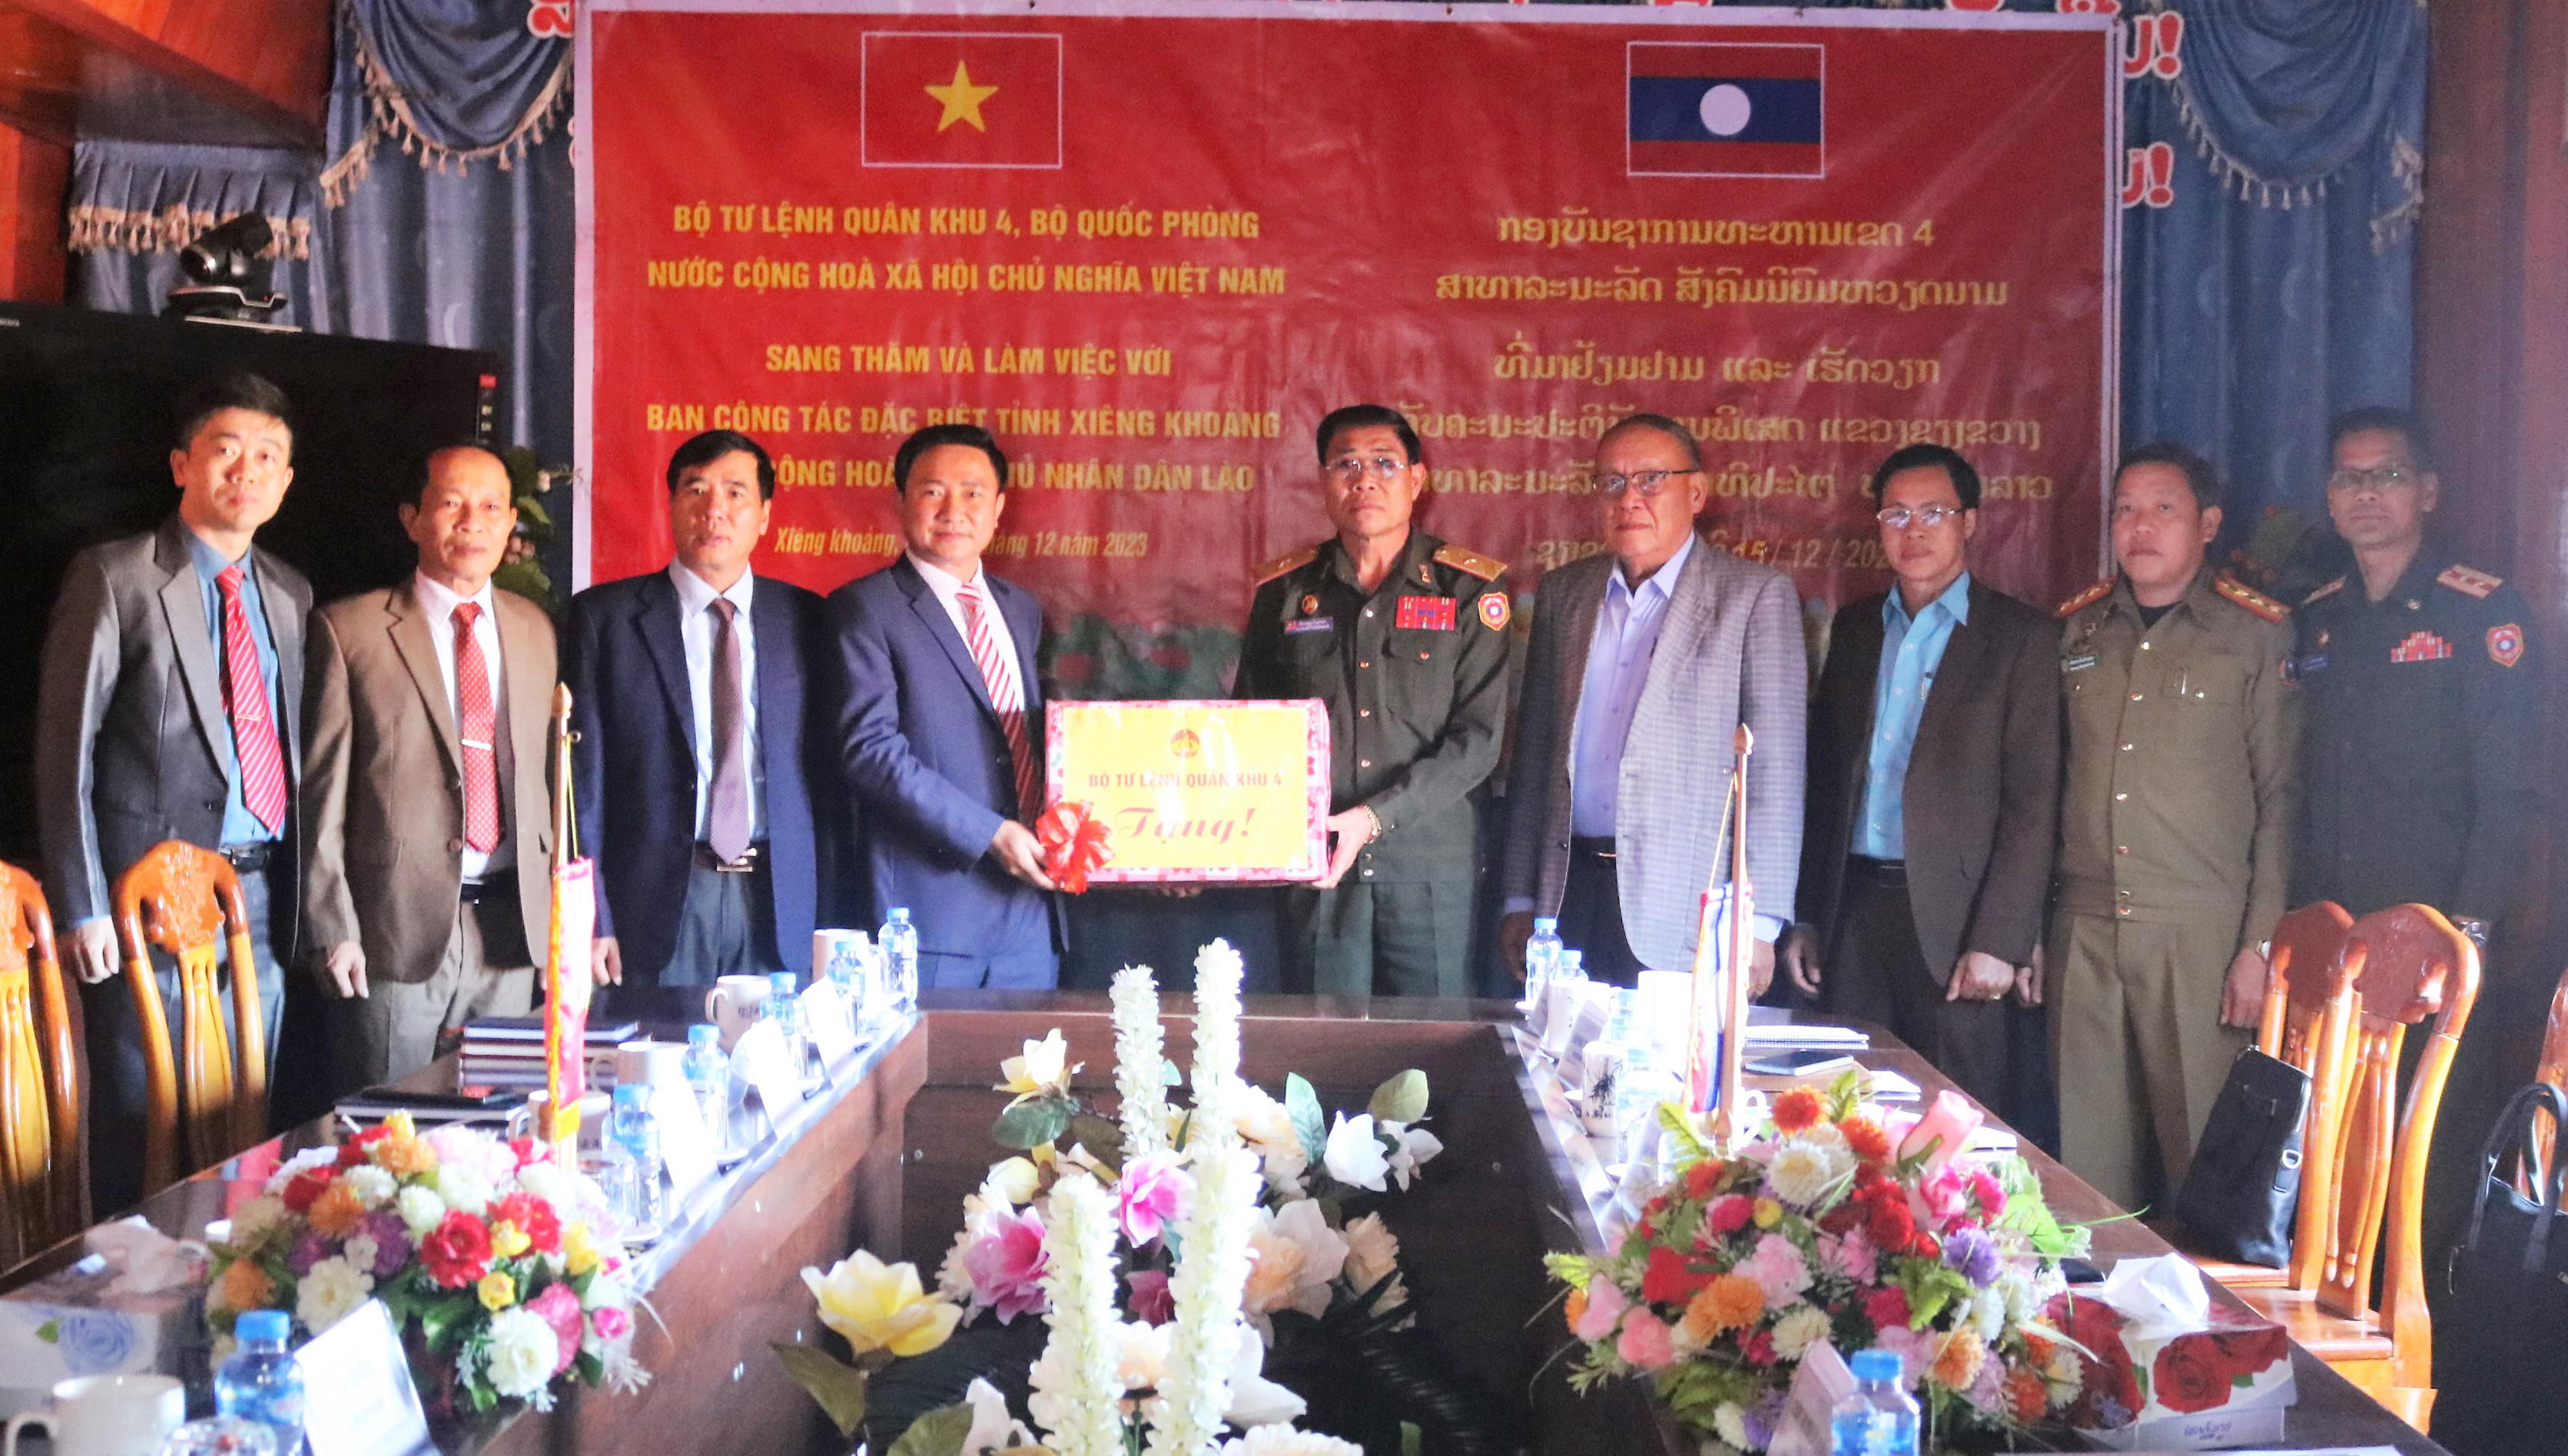 Ban Chỉ đạo 515 Quân khu tặng quà Ban Công tác đặc biệt tỉnh Xiêng Khoảng..jpg